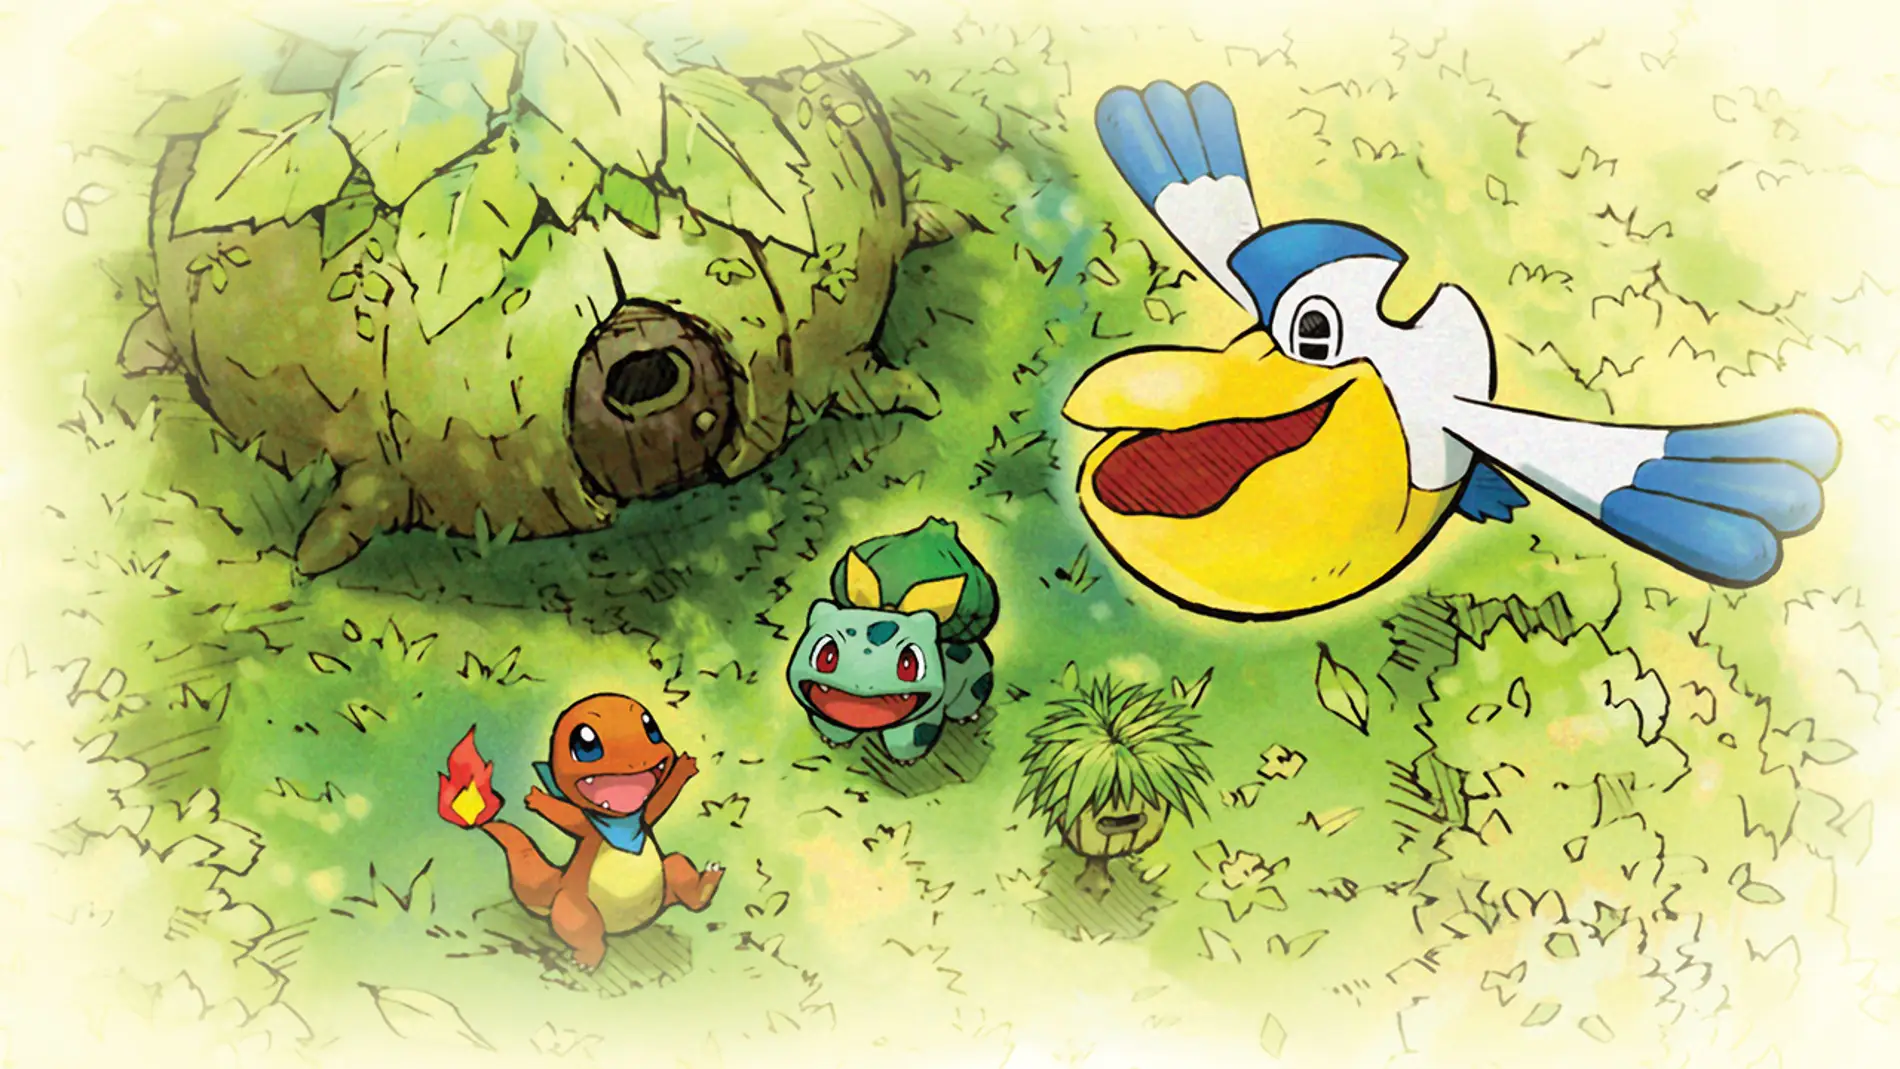 Pokémon Mundo misterioso: equipo de rescate DX, Juegos de Nintendo Switch, Juegos